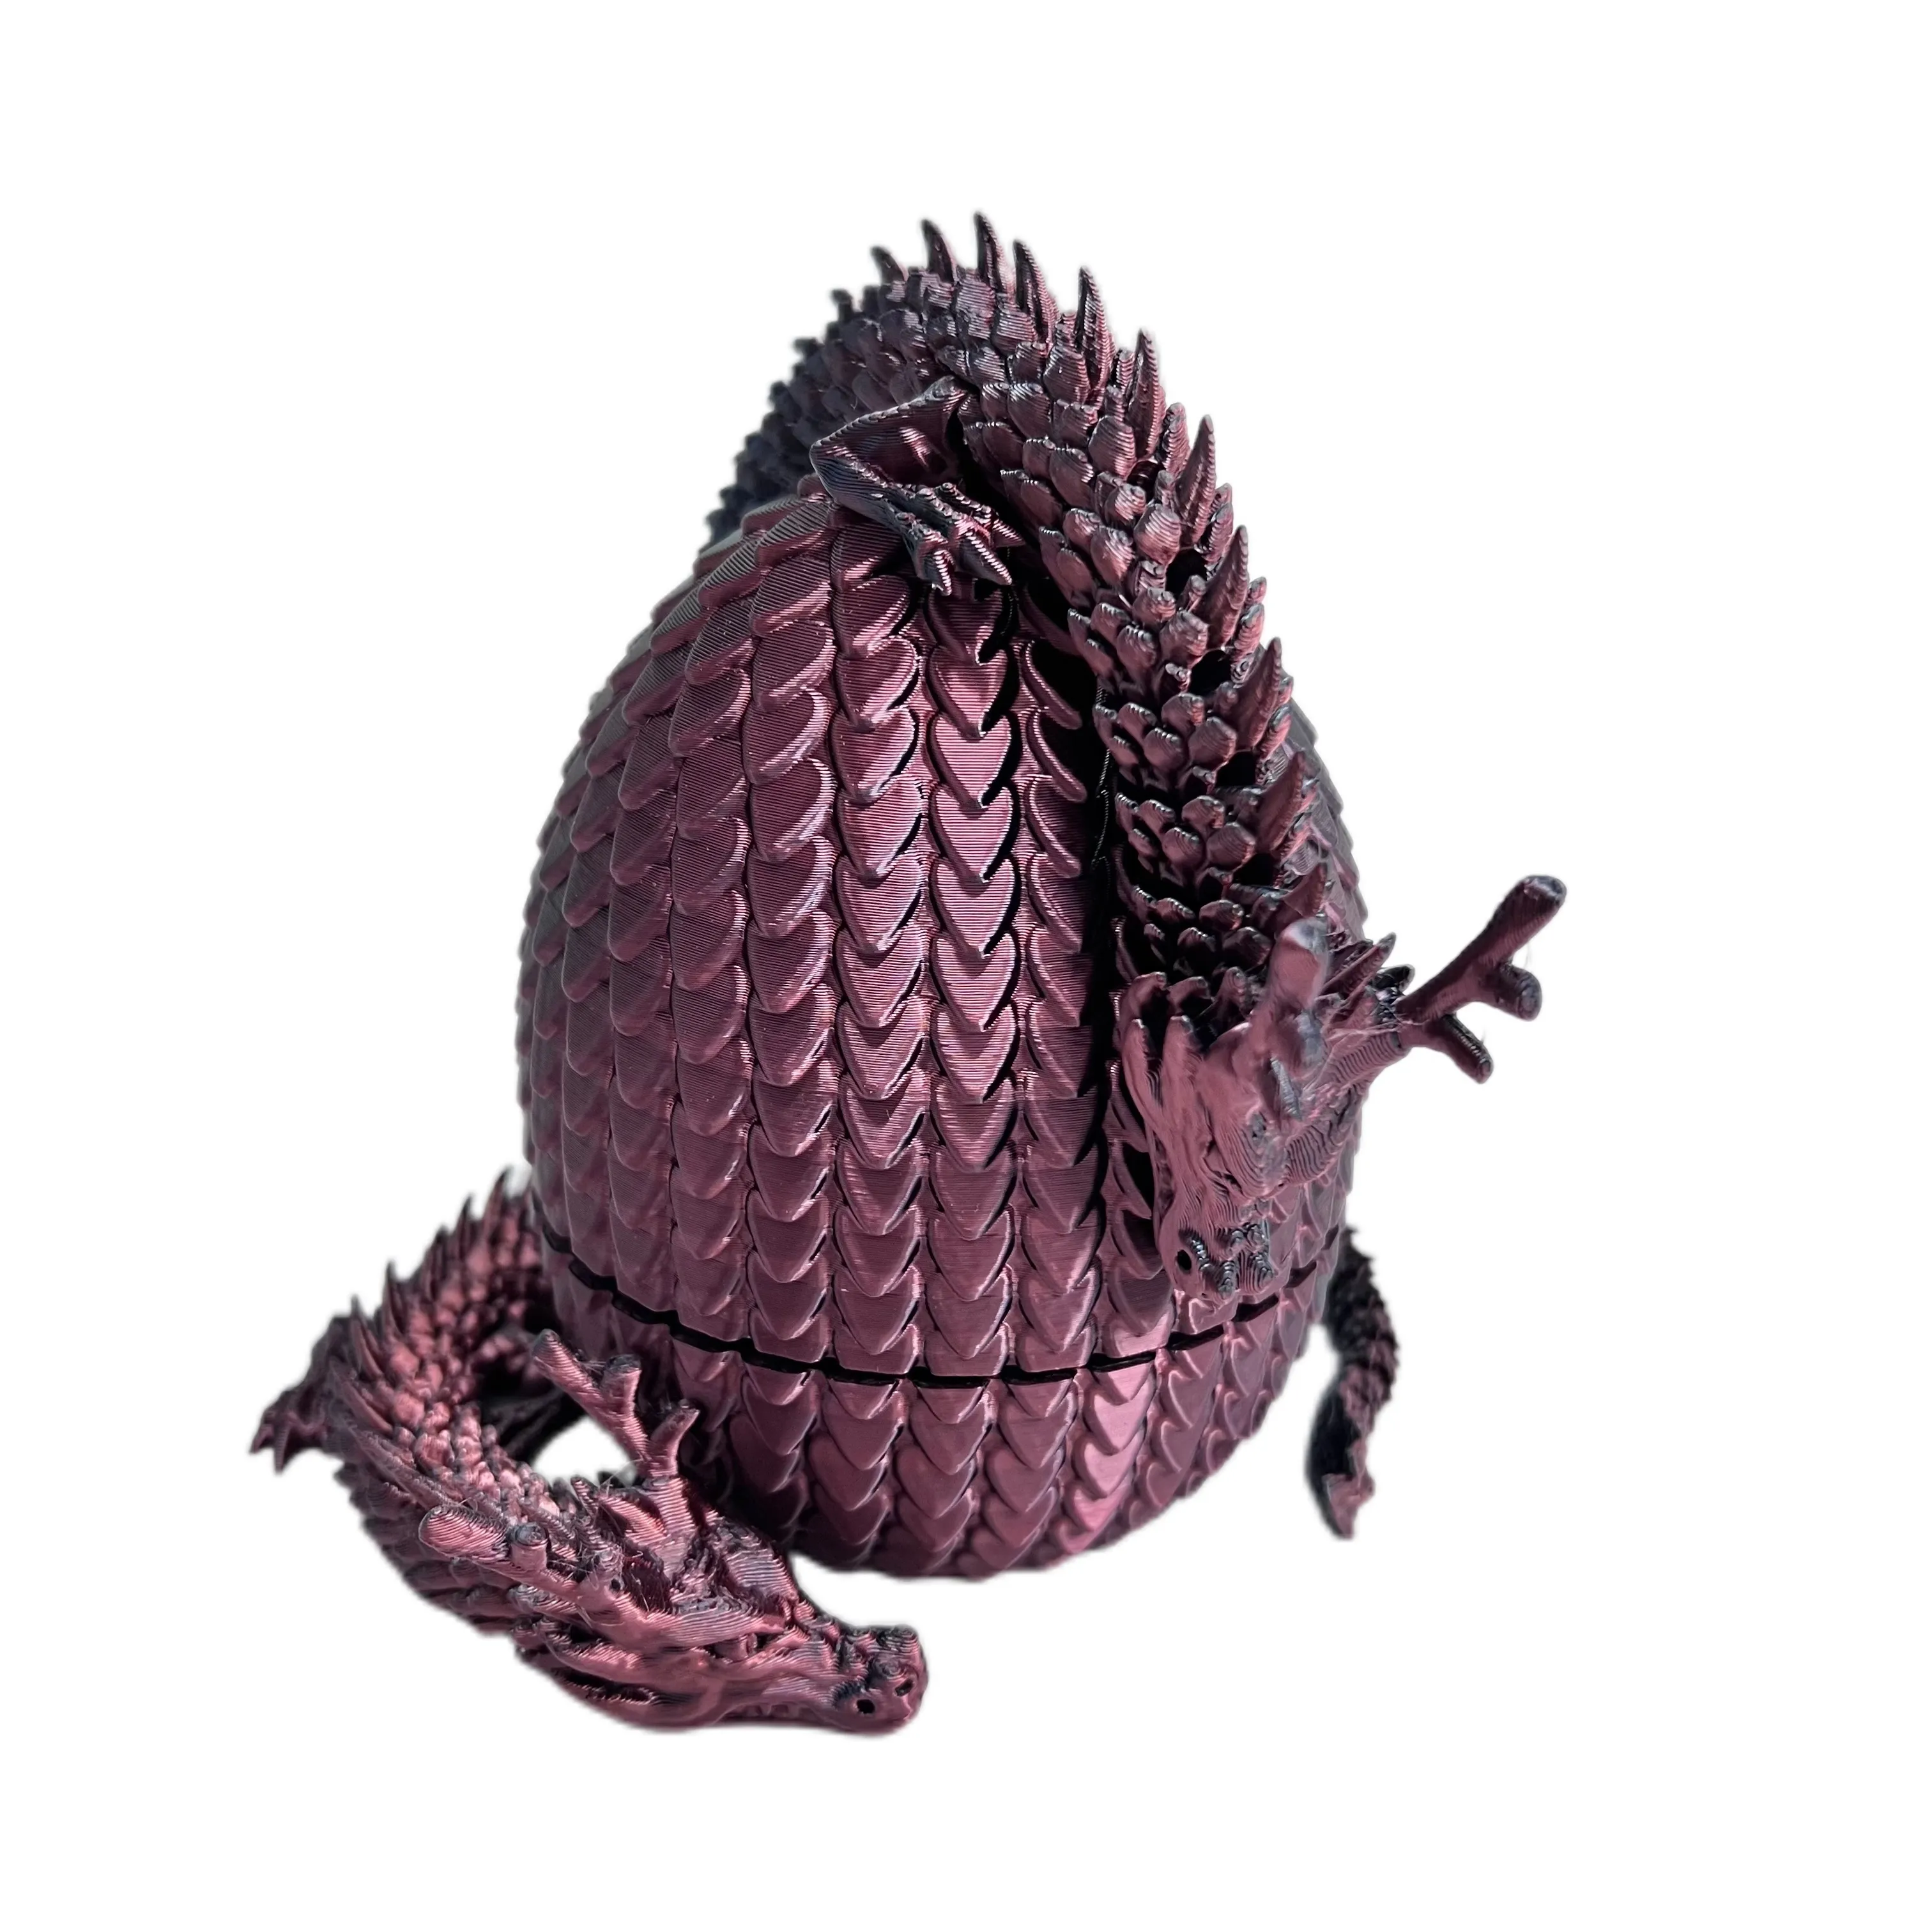 Dragón chino muestra rápida puede personalizar servicio de procesamiento de impresión 3D FDM plástico impresión 3D dragón chino y huevo de dragón